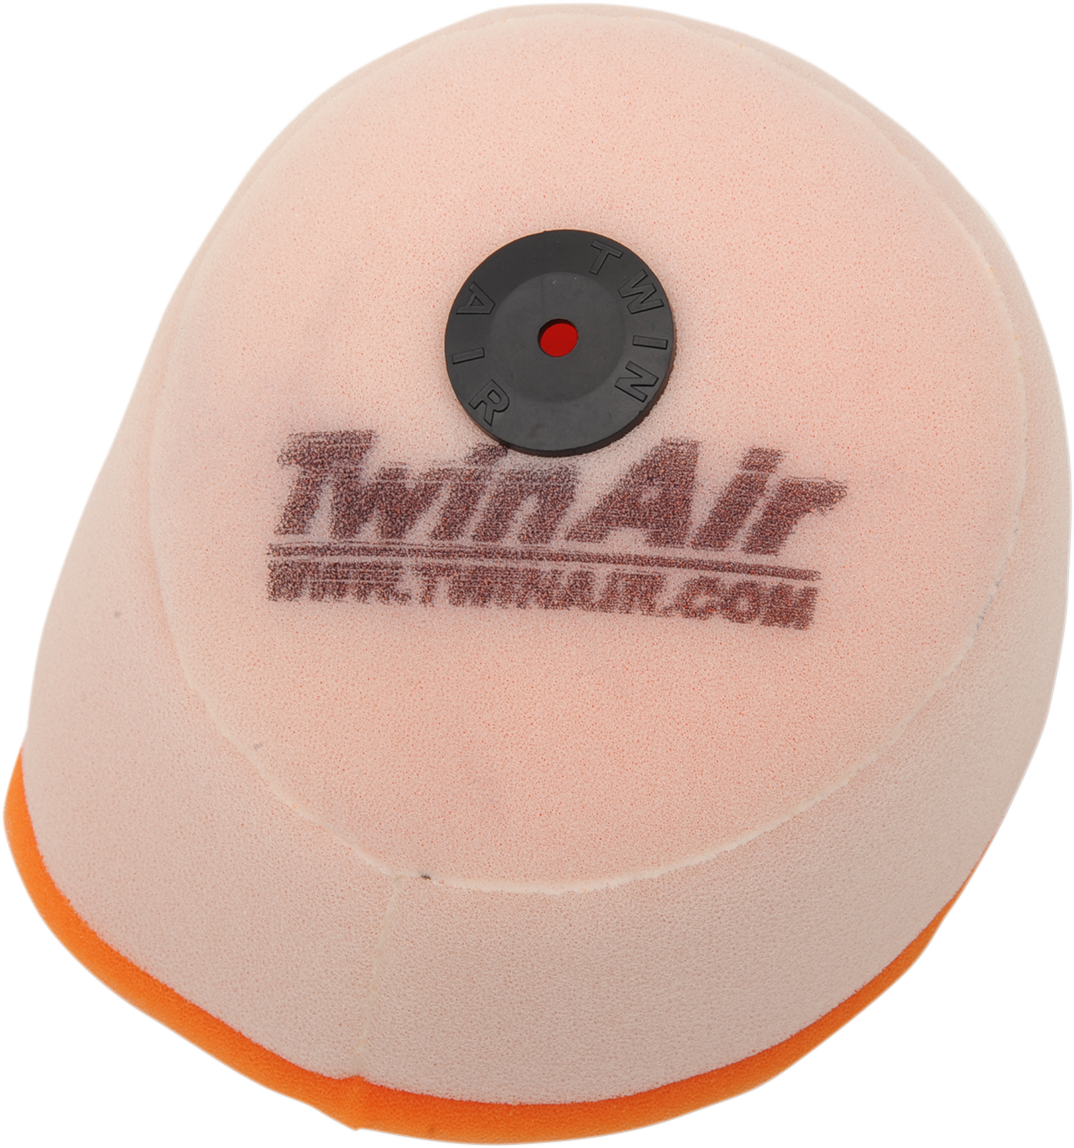 Filtro de repuesto TWIN AIR Powerflow - CR 150198